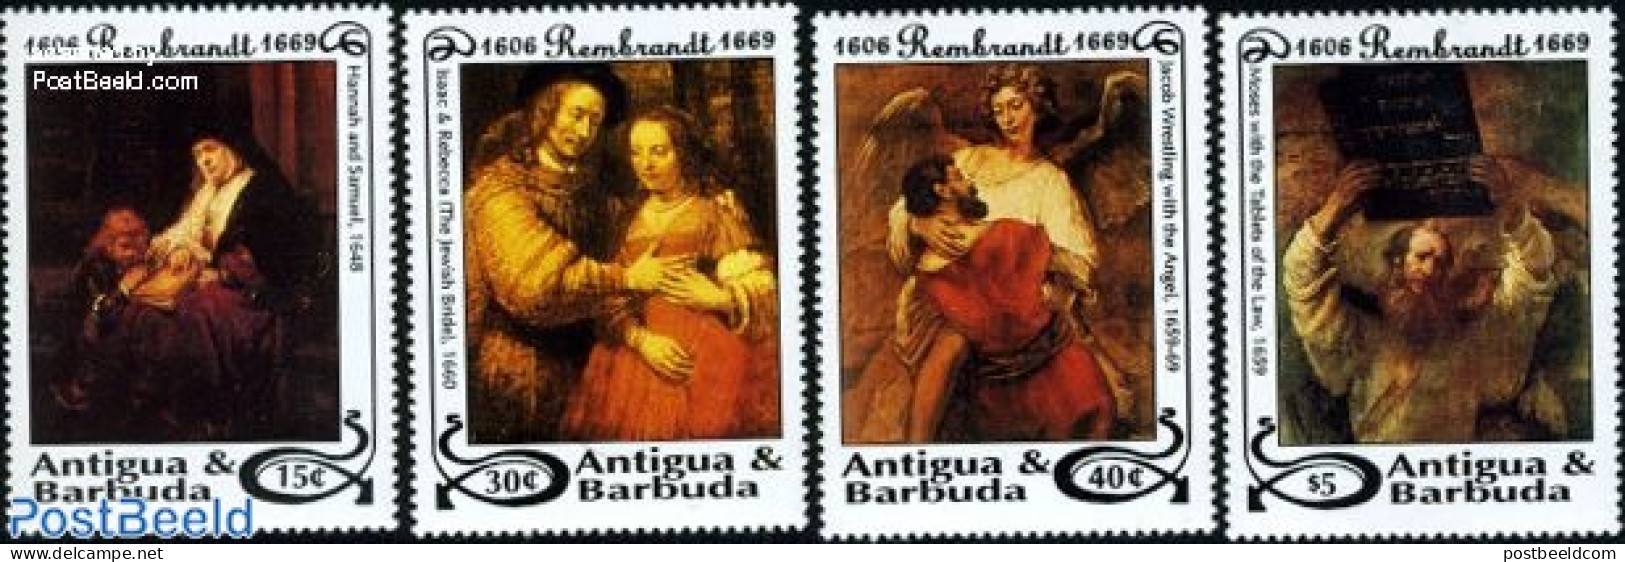 Antigua & Barbuda 1993 Rembrandt 4v, Mint NH, Art - Paintings - Rembrandt - Antigua Et Barbuda (1981-...)